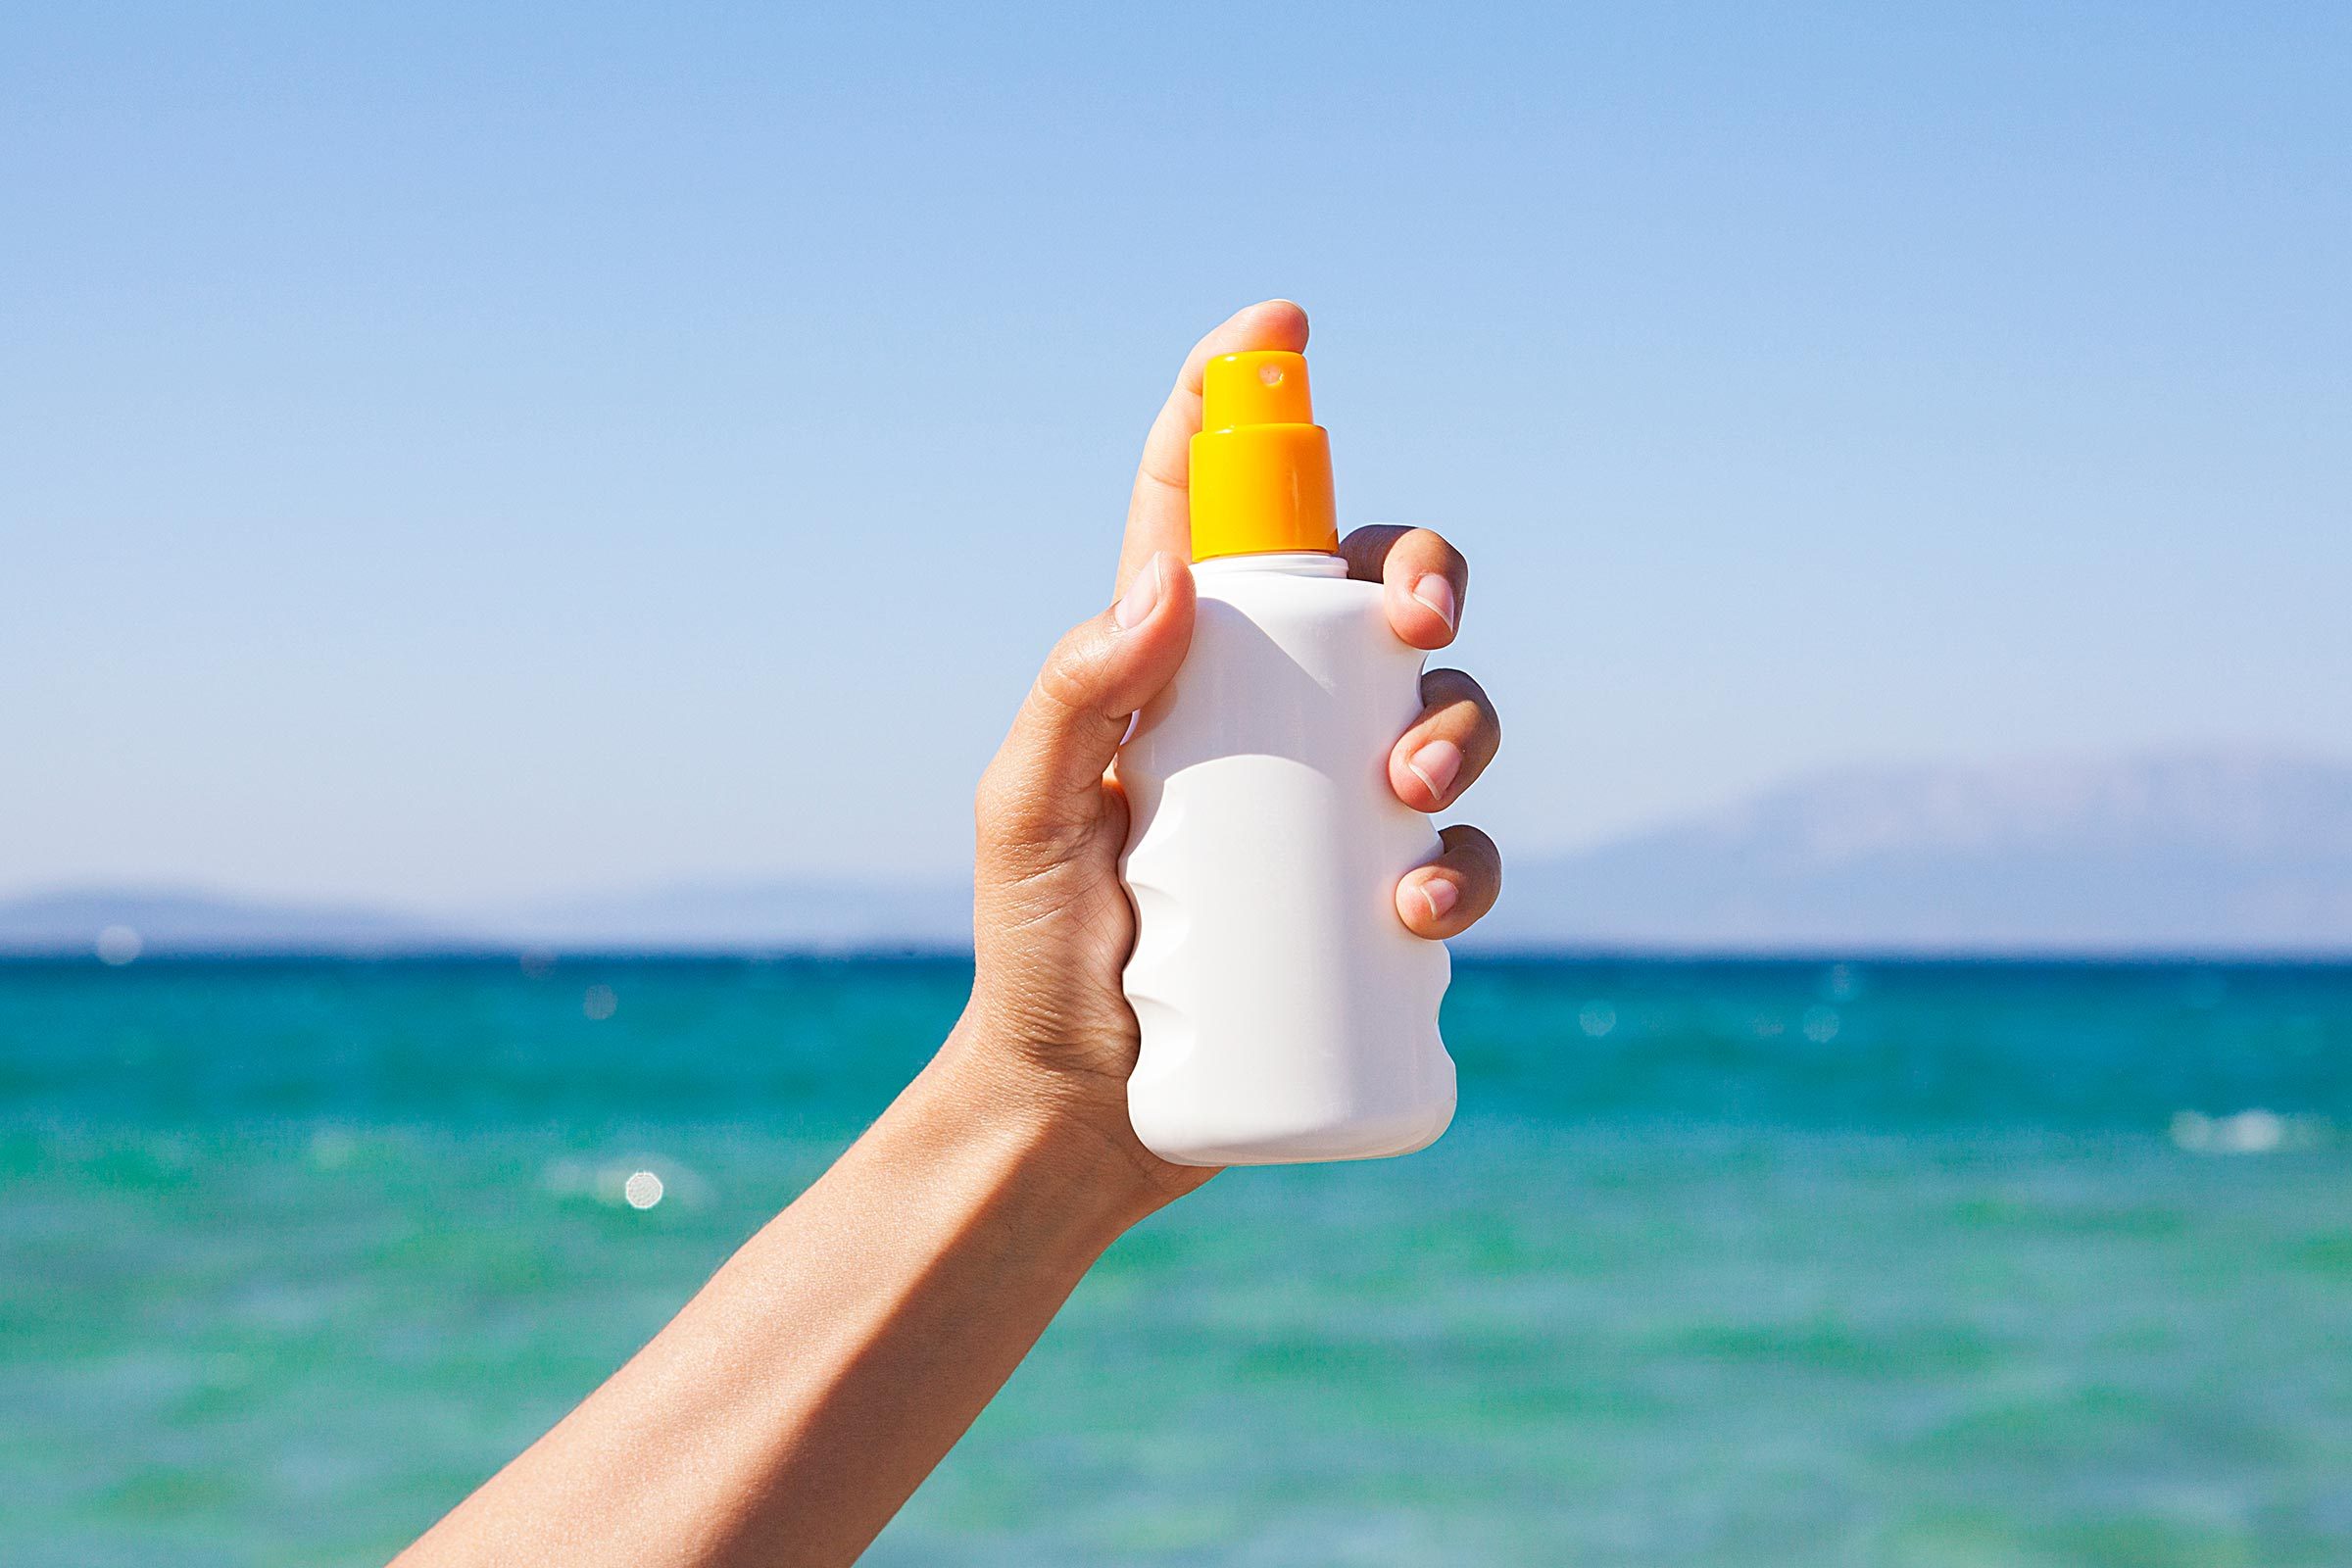 hand sunscreen bottle beach ocean water